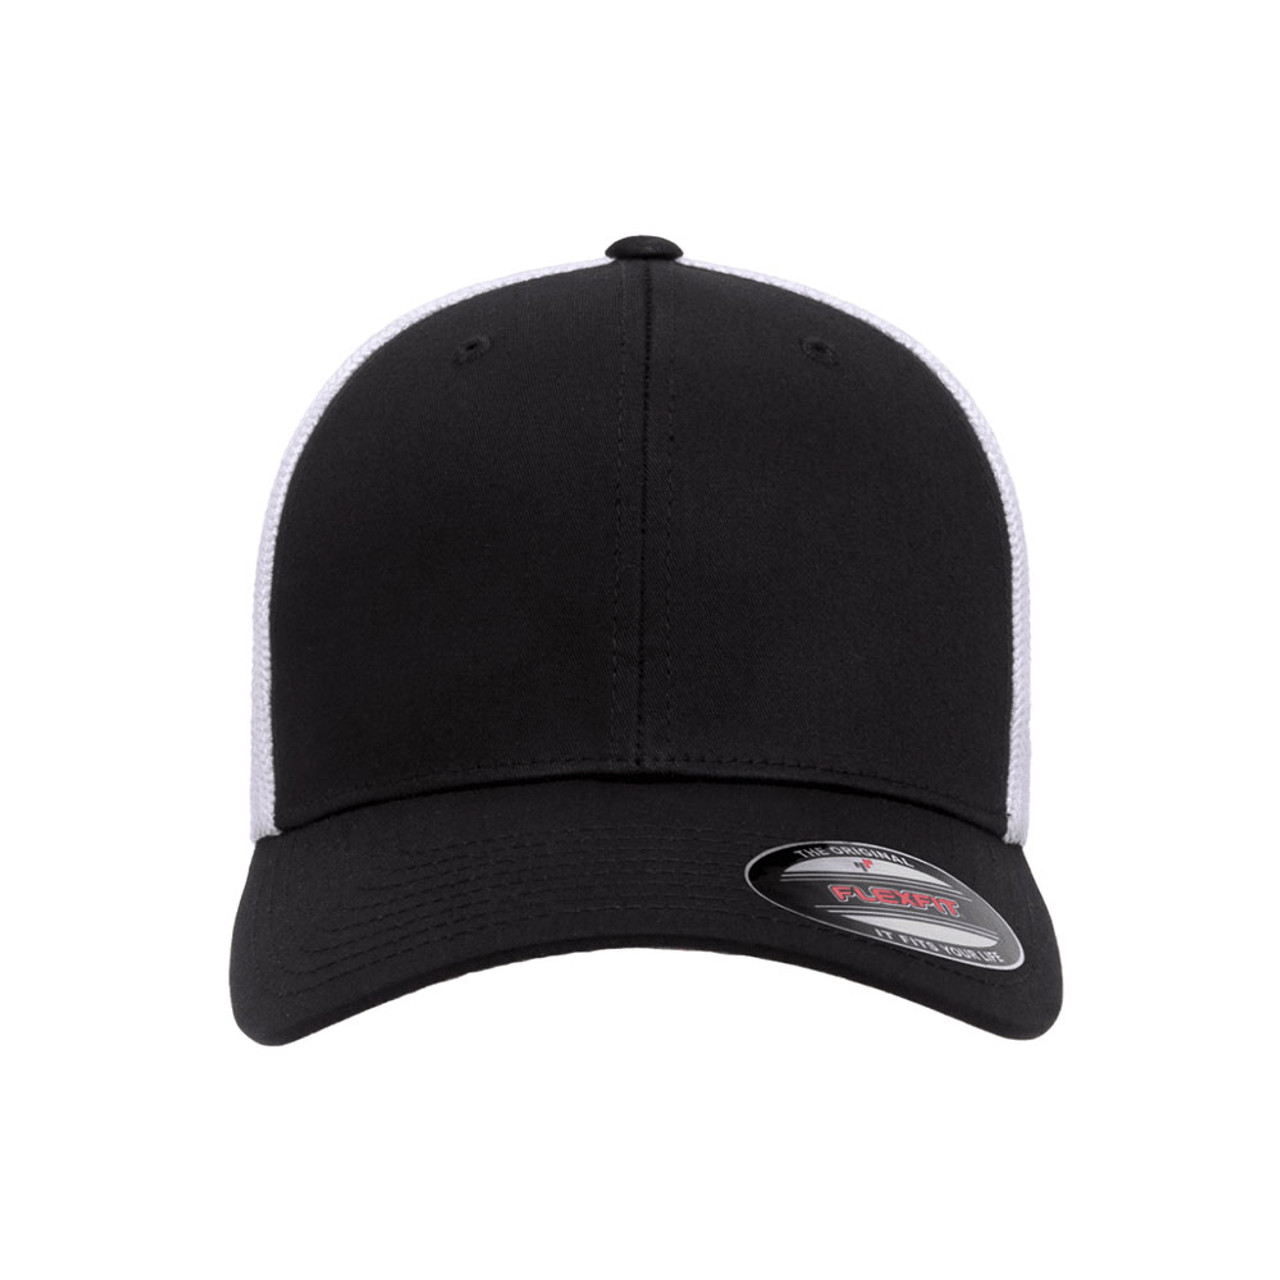 Flexfit Trucker Mesh Cap - The | Jac Hat 2-Tone Dozen One 